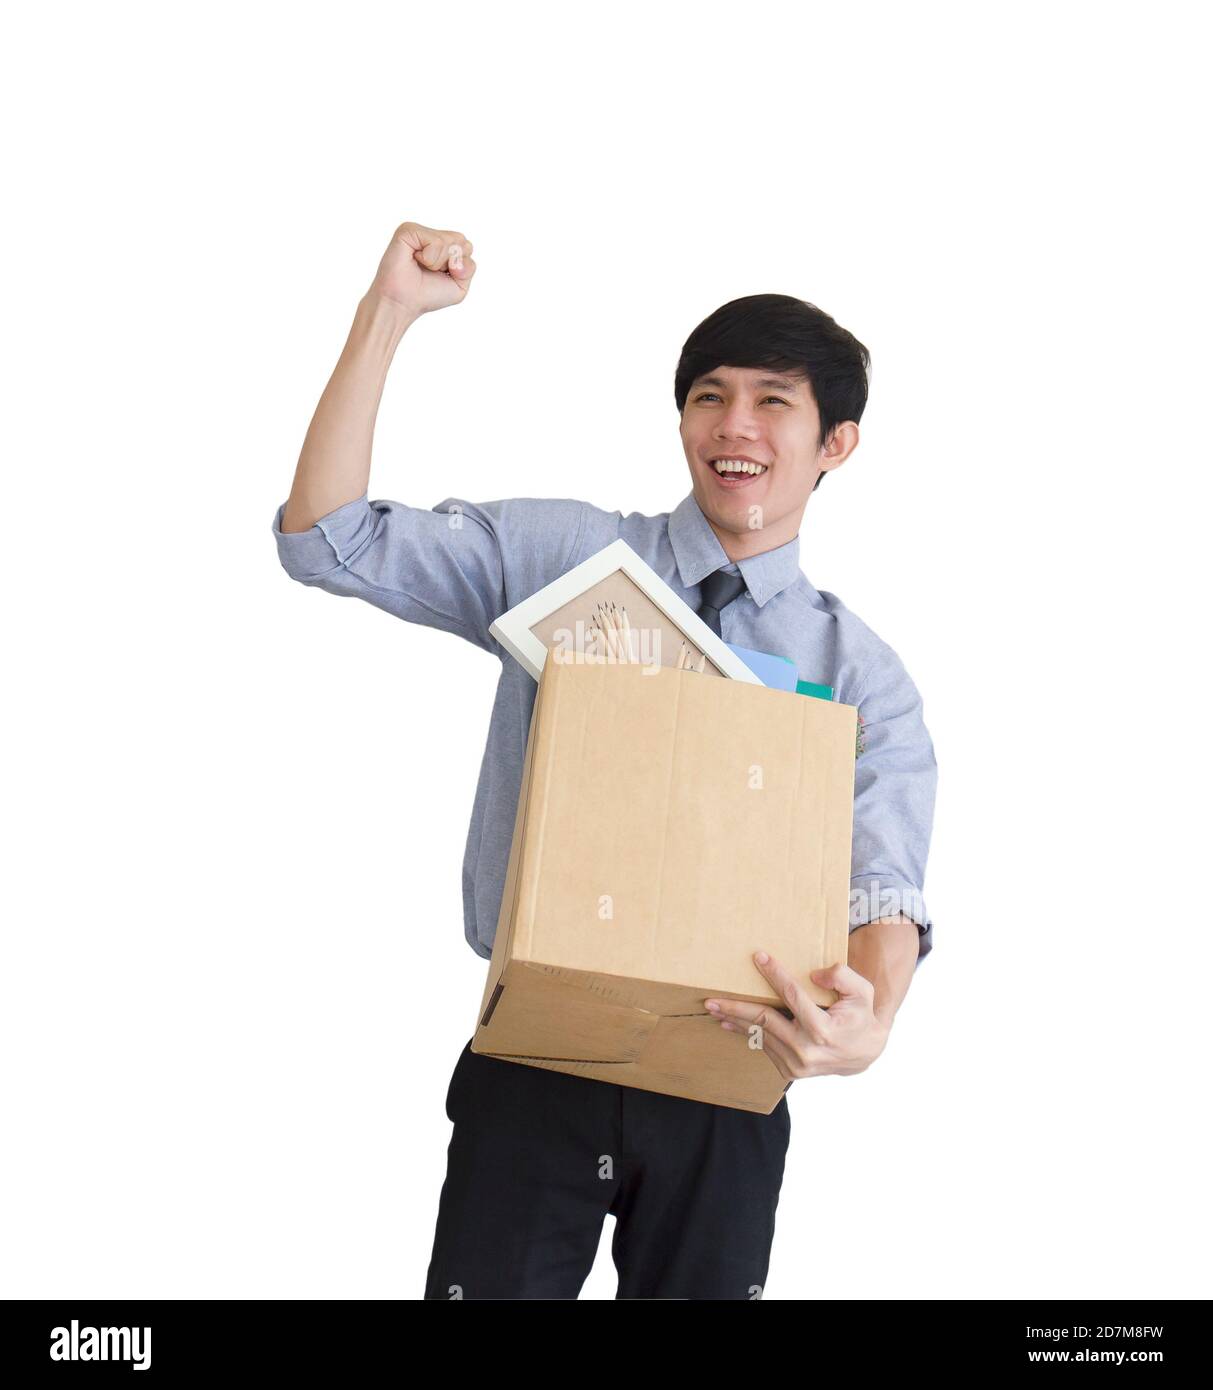 Ein asiatischer Mann steht jubelend auf einem weißen Hintergrund, nachdem er gefeuert wurde und hält seine persönlichen Sachen in einem Karton. Stockfoto